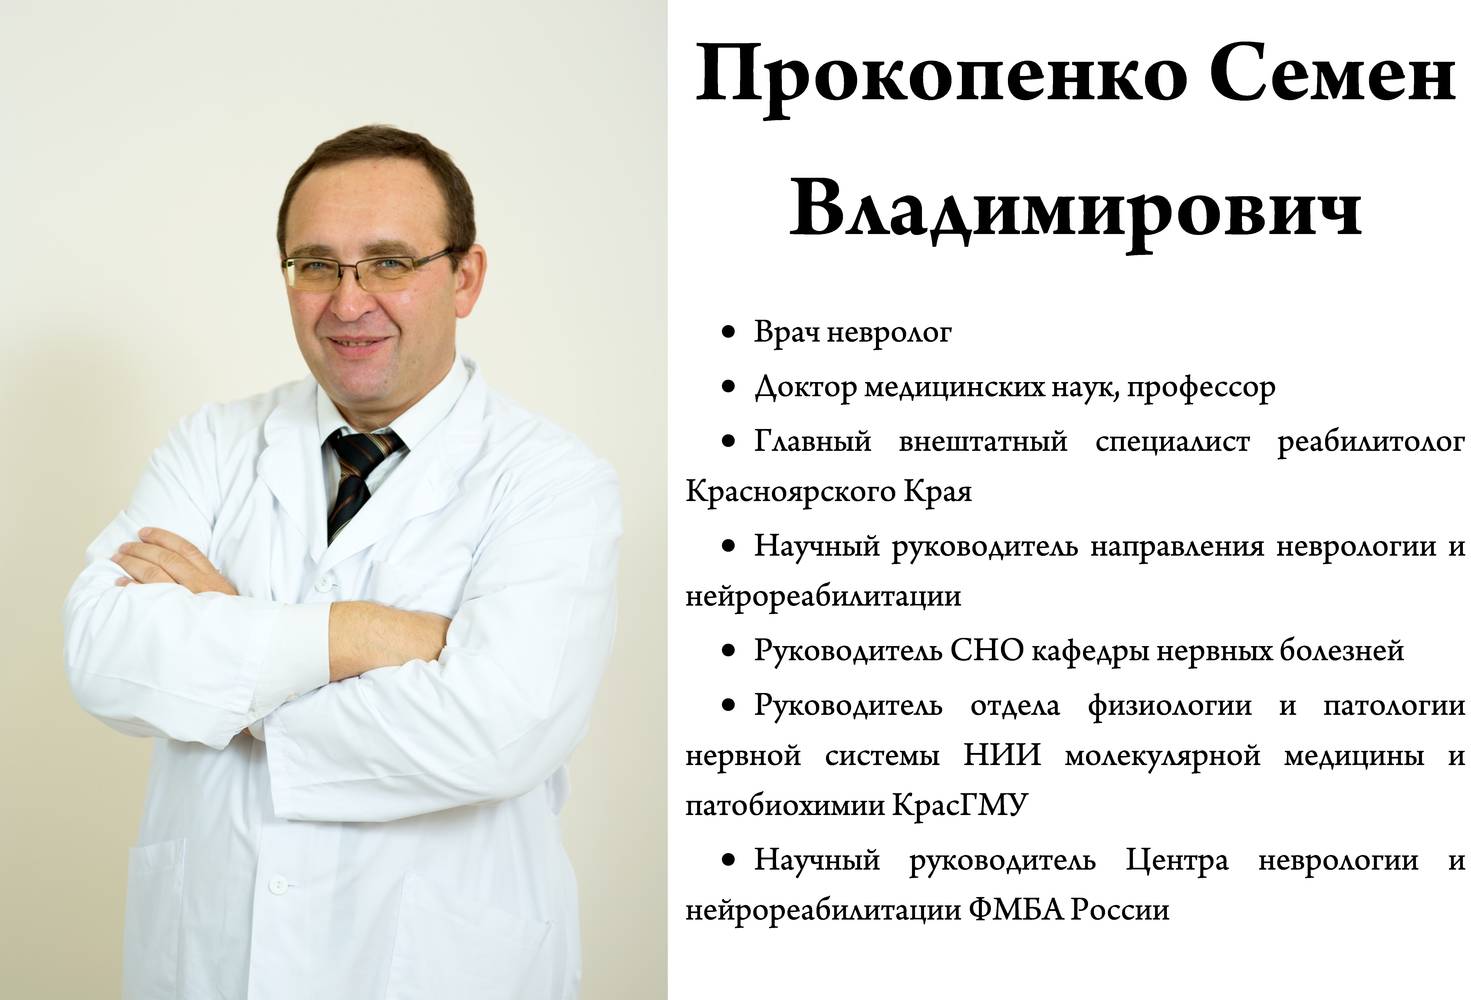 Пермь профессорская клиника невролог